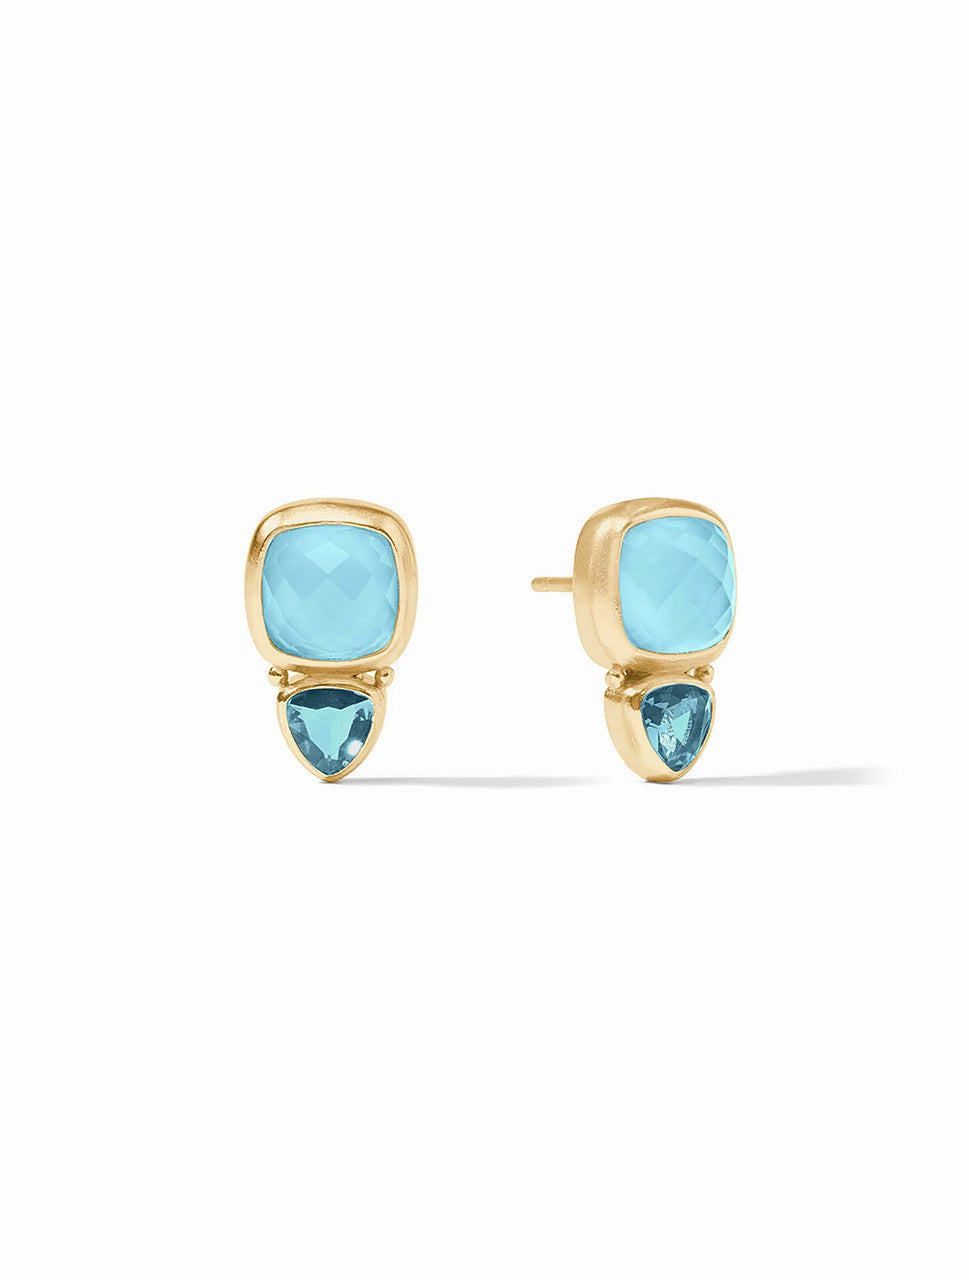 Aquitaine Capri Blue Iridescent Duo Stud Earrings